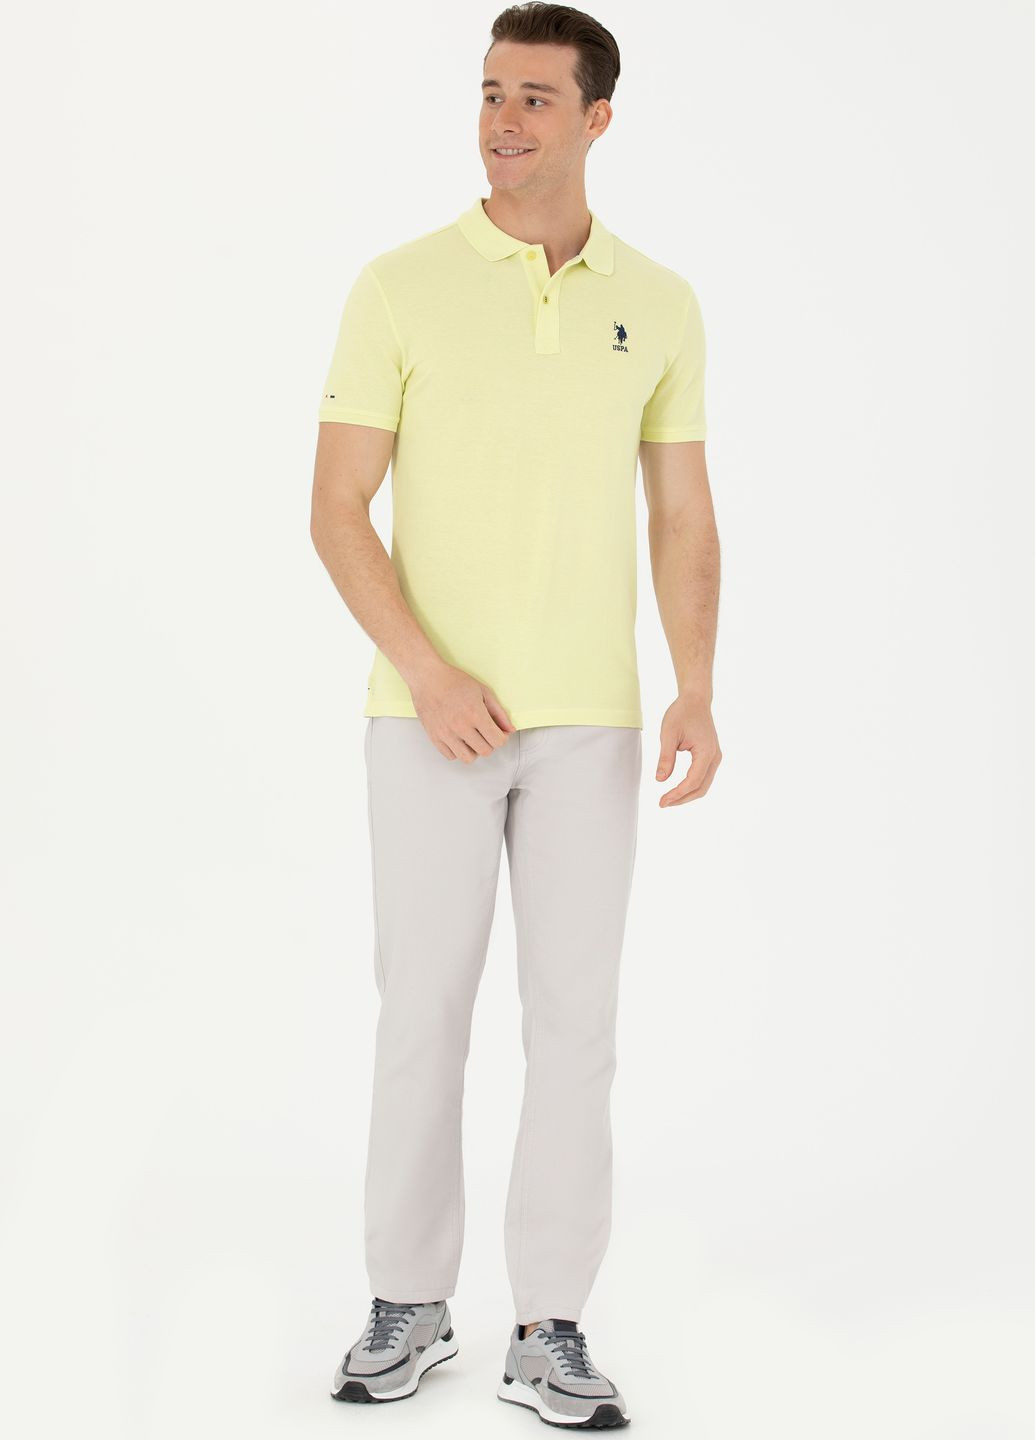 Светло-желтая футболка поло мужское U.S. Polo Assn.